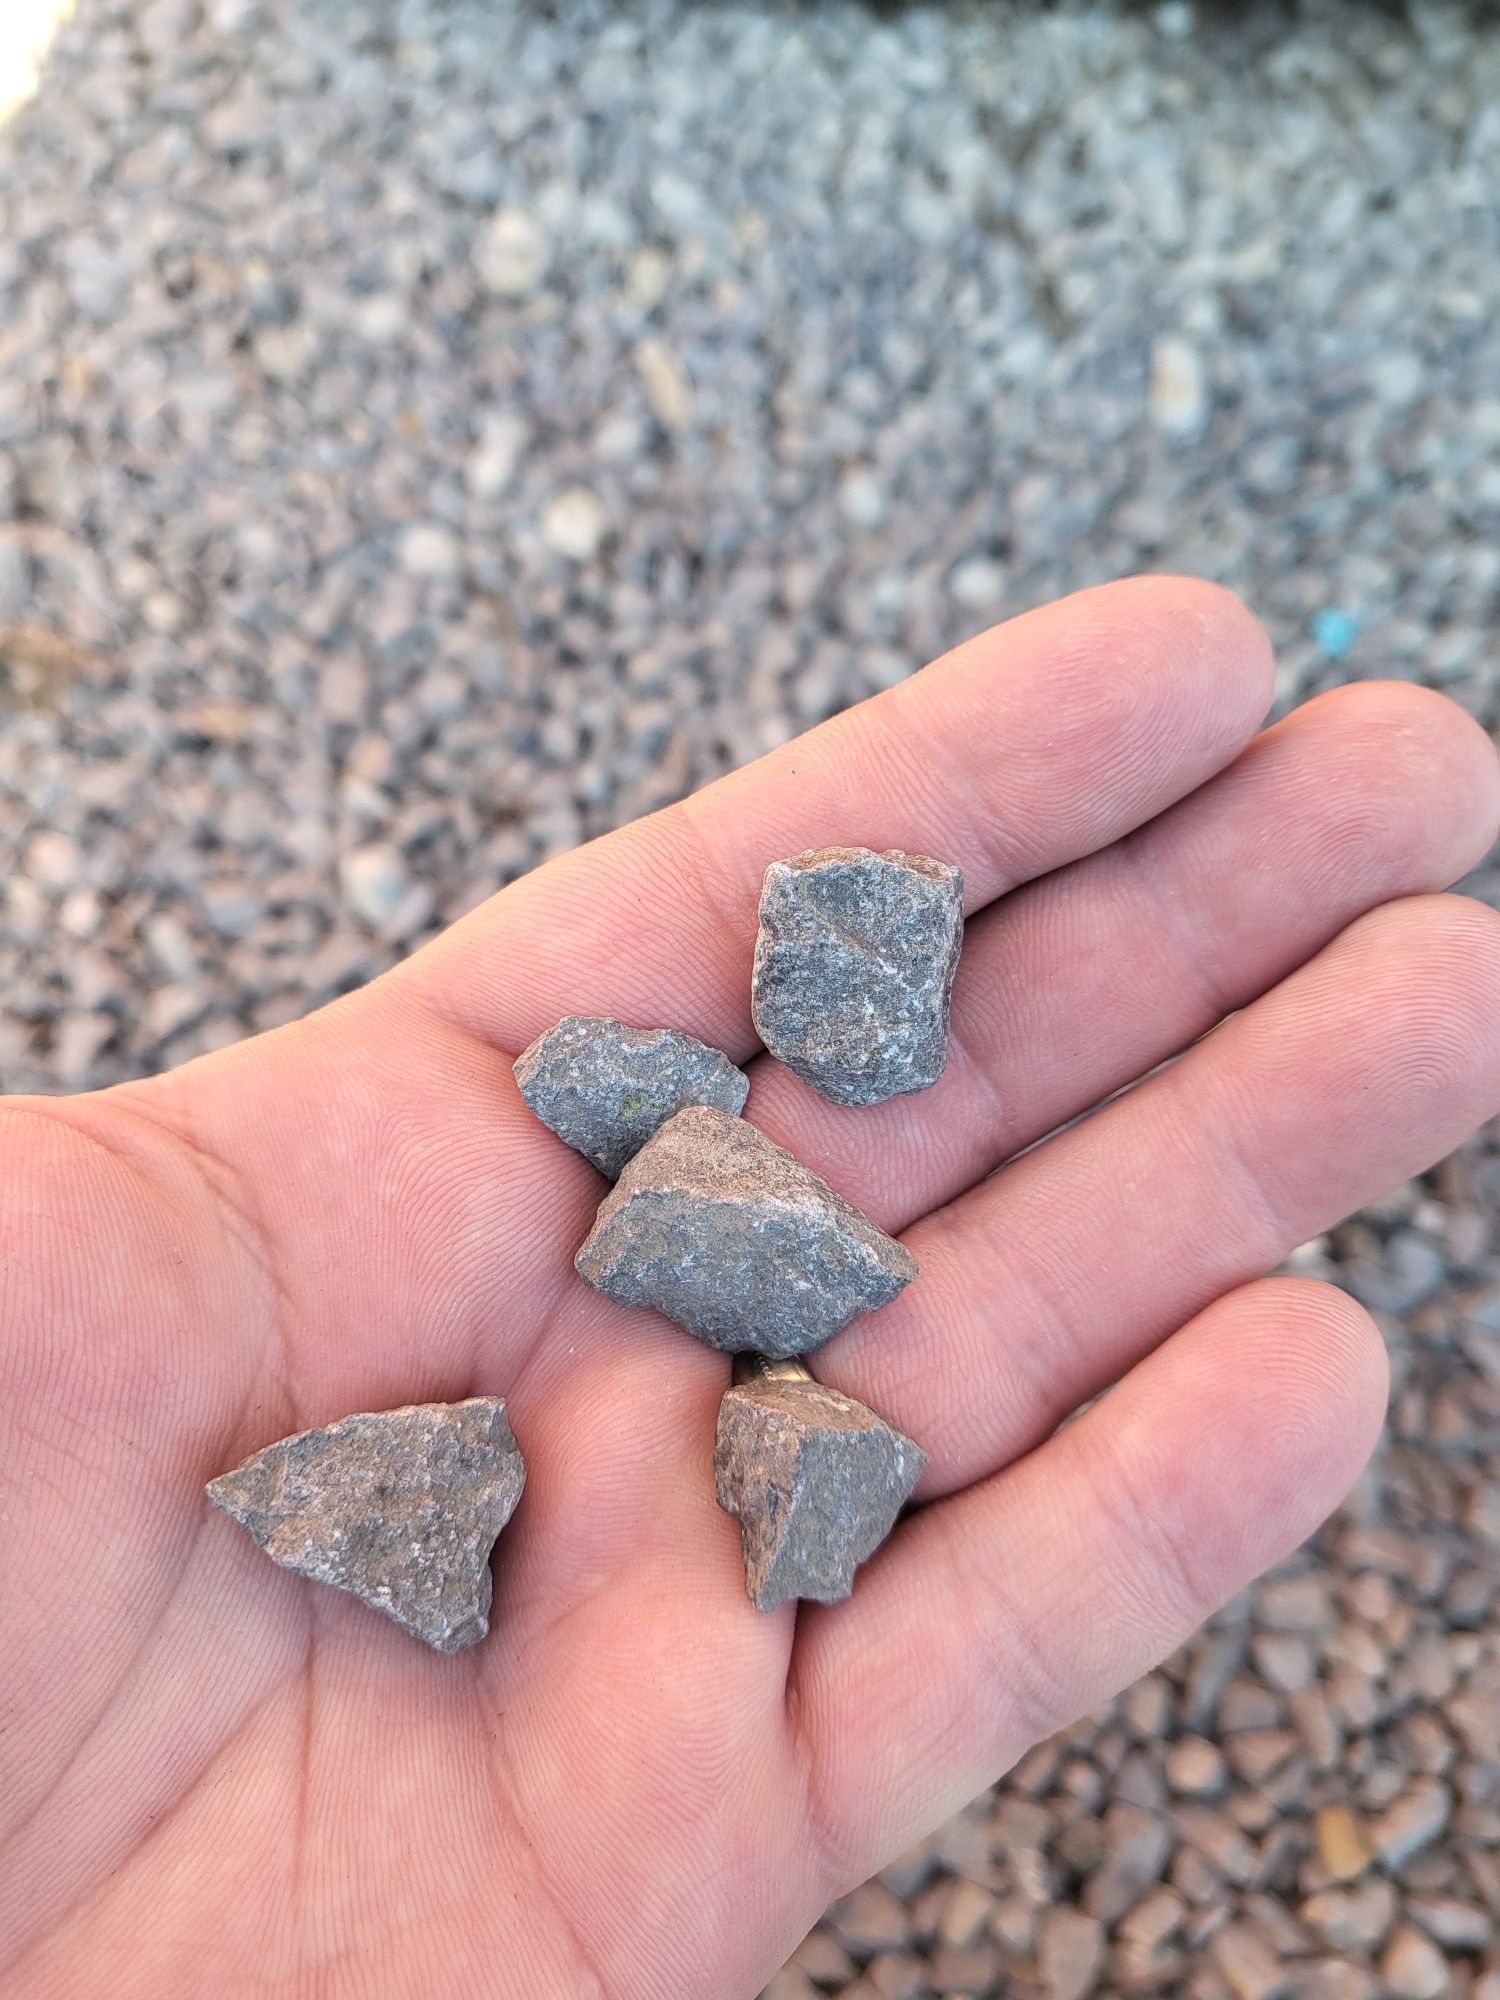 Piatră spartă, nisip, sort, moloz